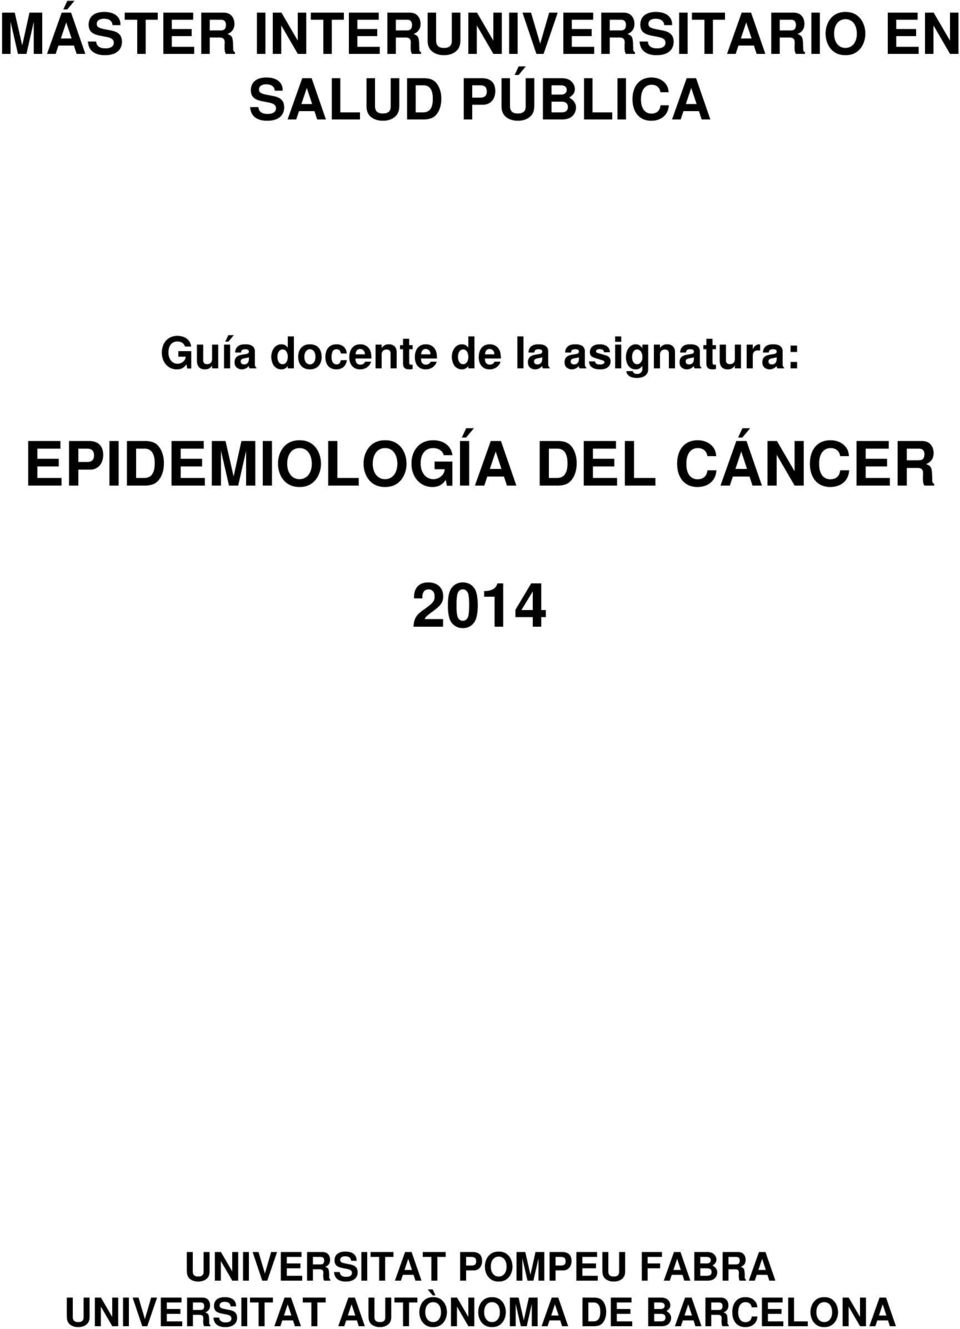 EPIDEMIOLOGÍA DEL CÁNCER 2014